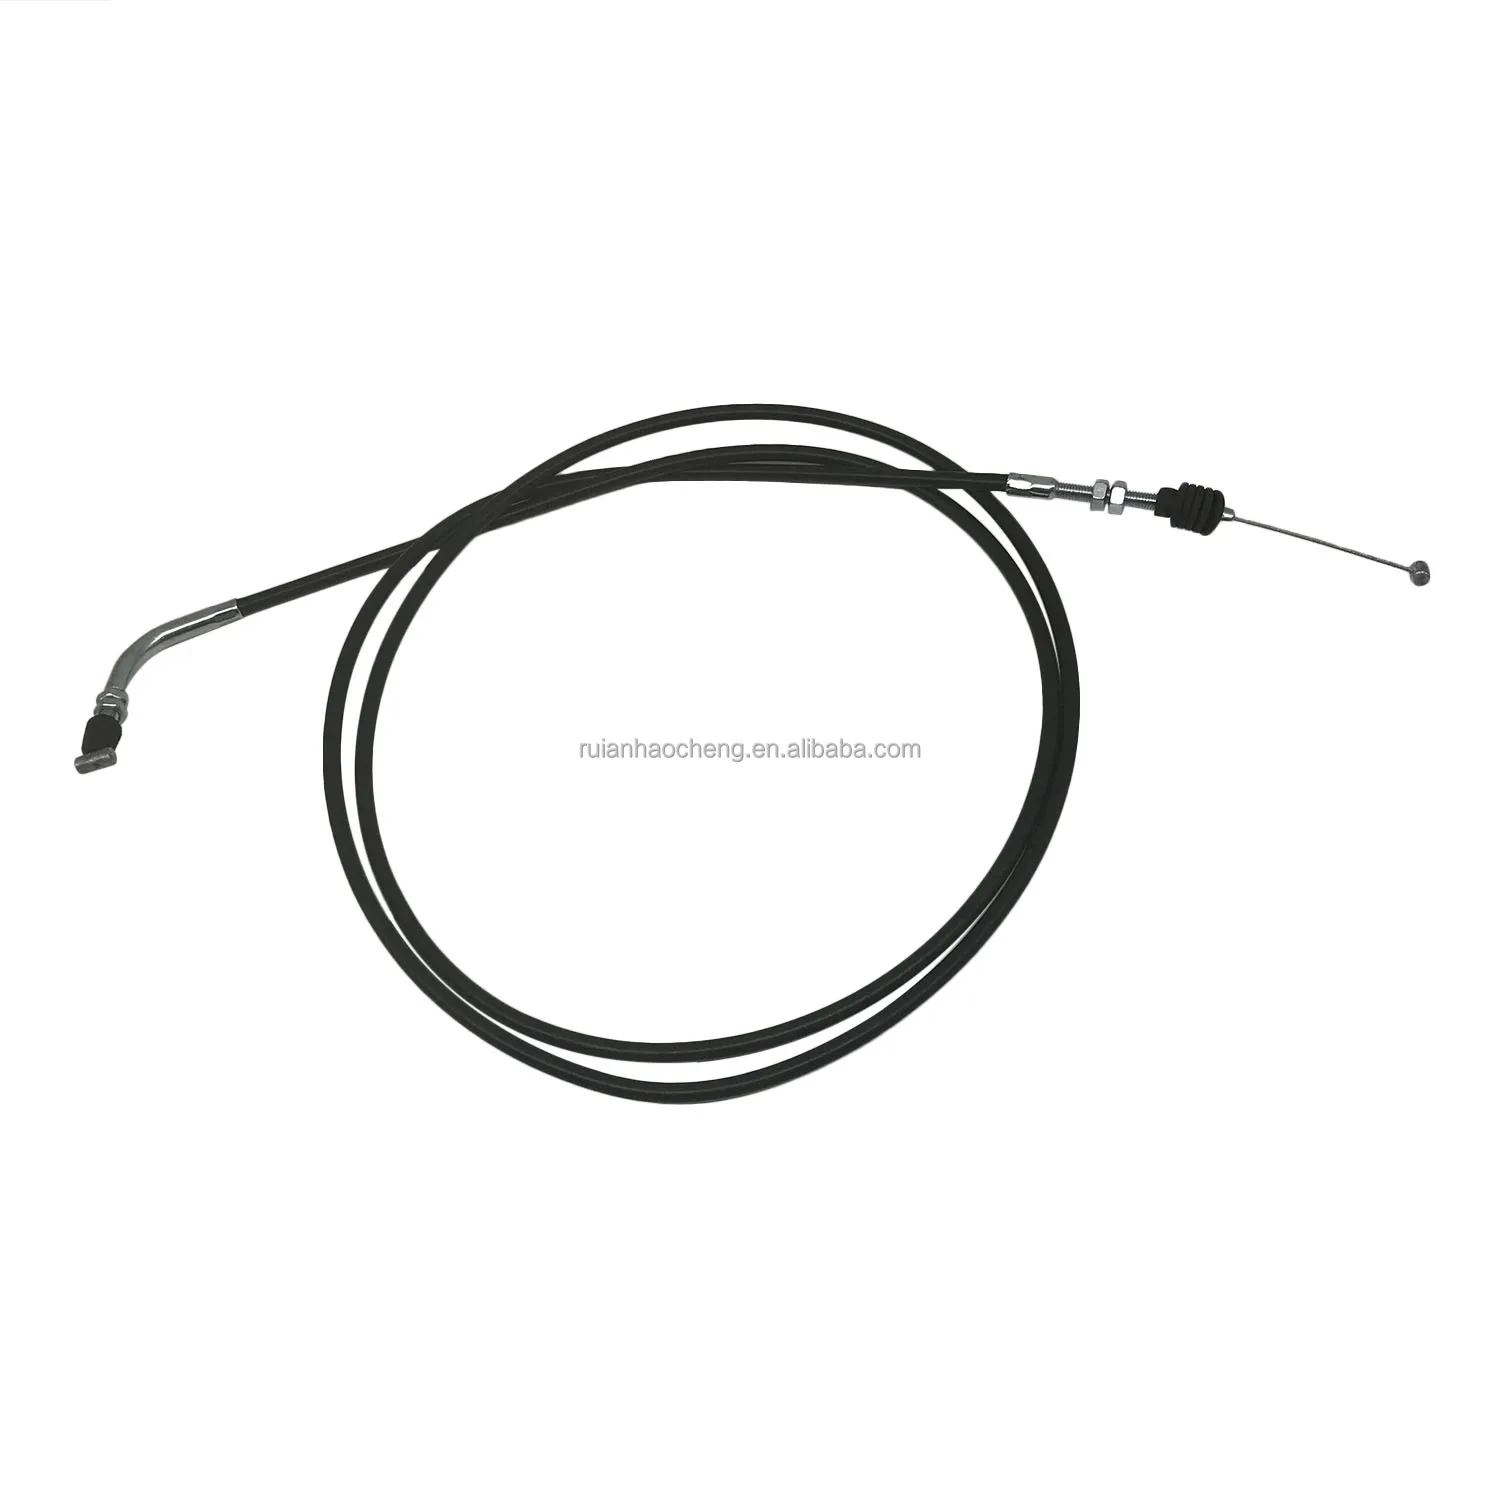 HOLDWELL Starter Choke Cable #54017-1182 32.5 Long Compatible with 1993-1996 Kawasaki Mule 500 2000-2003 Mule 520 1997-2004 Mule 550 